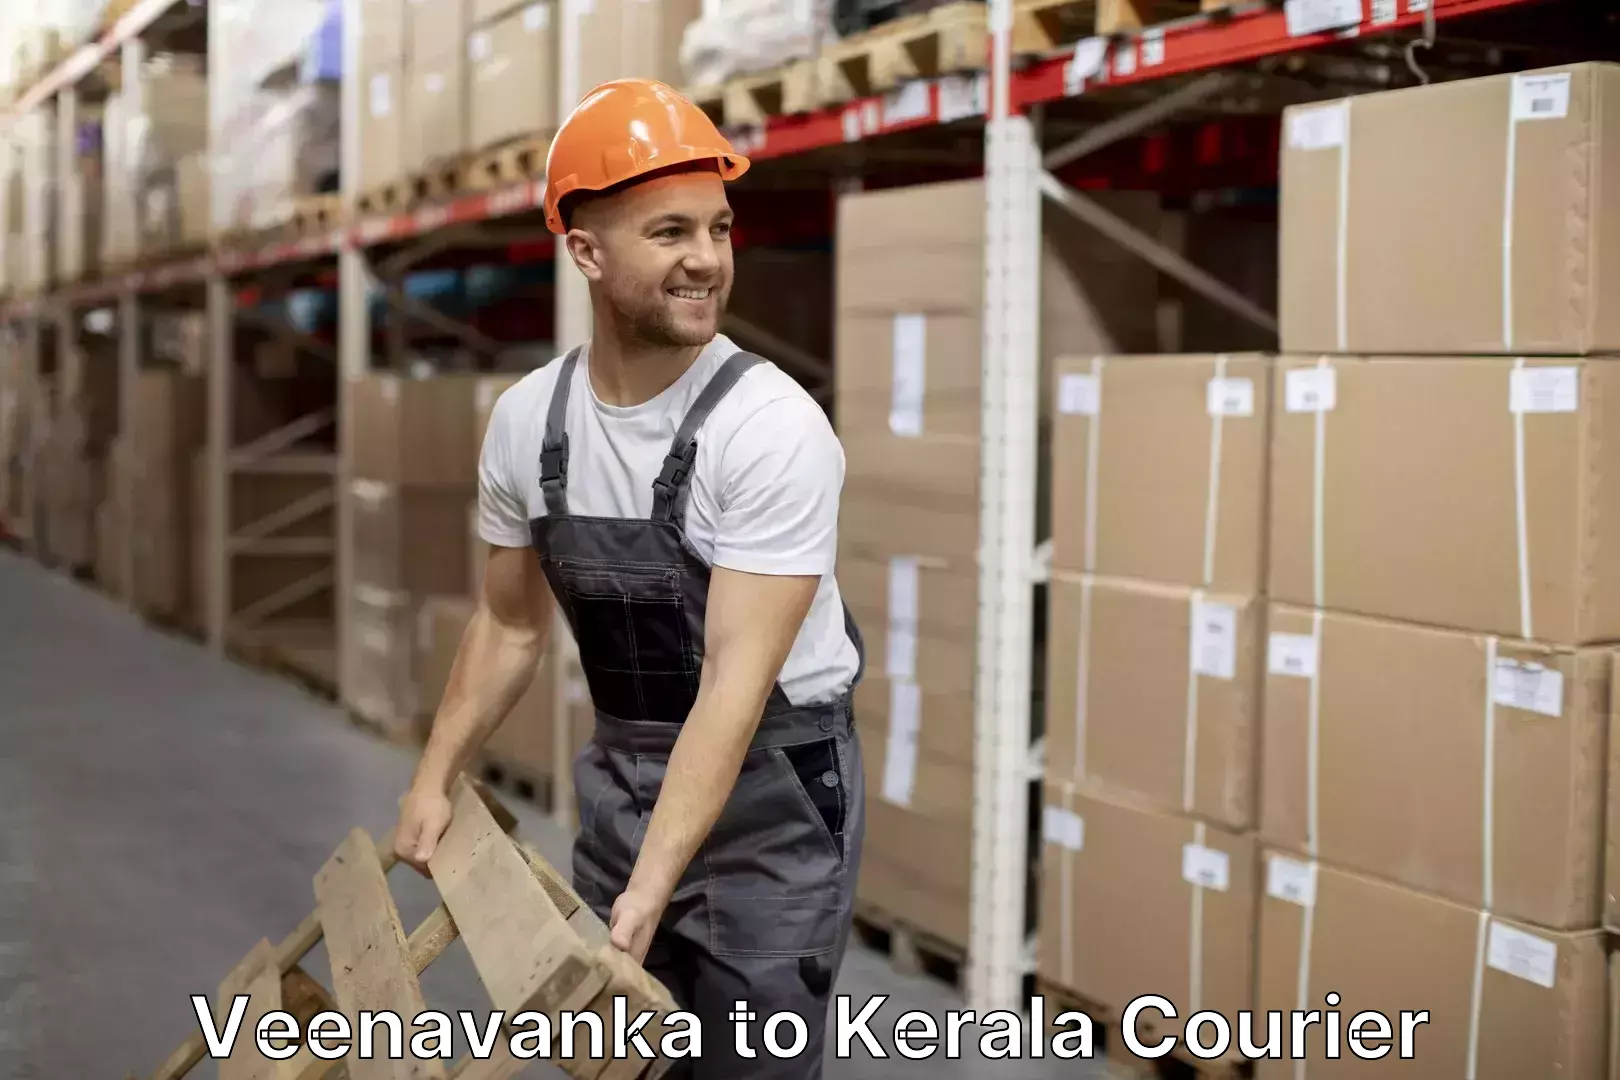 Furniture delivery service in Veenavanka to Kerala